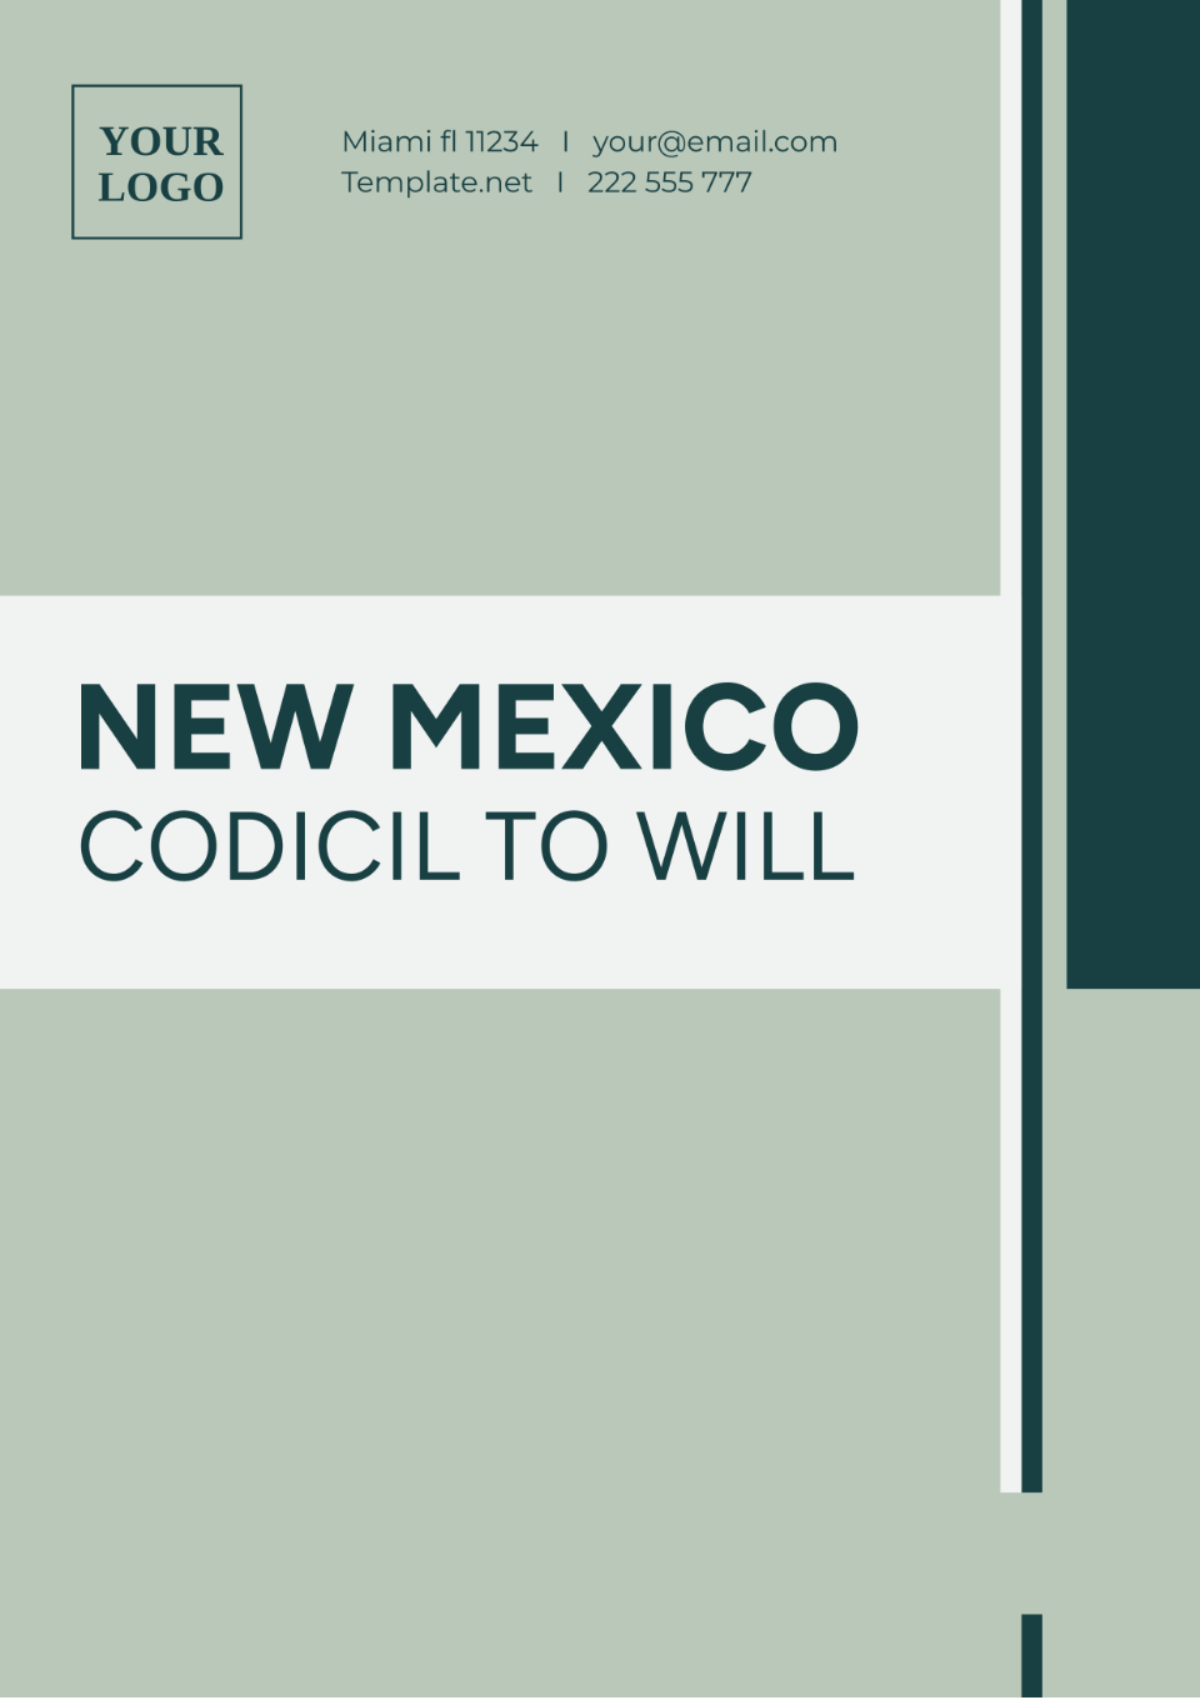 New Mexico Codicil to Will Template